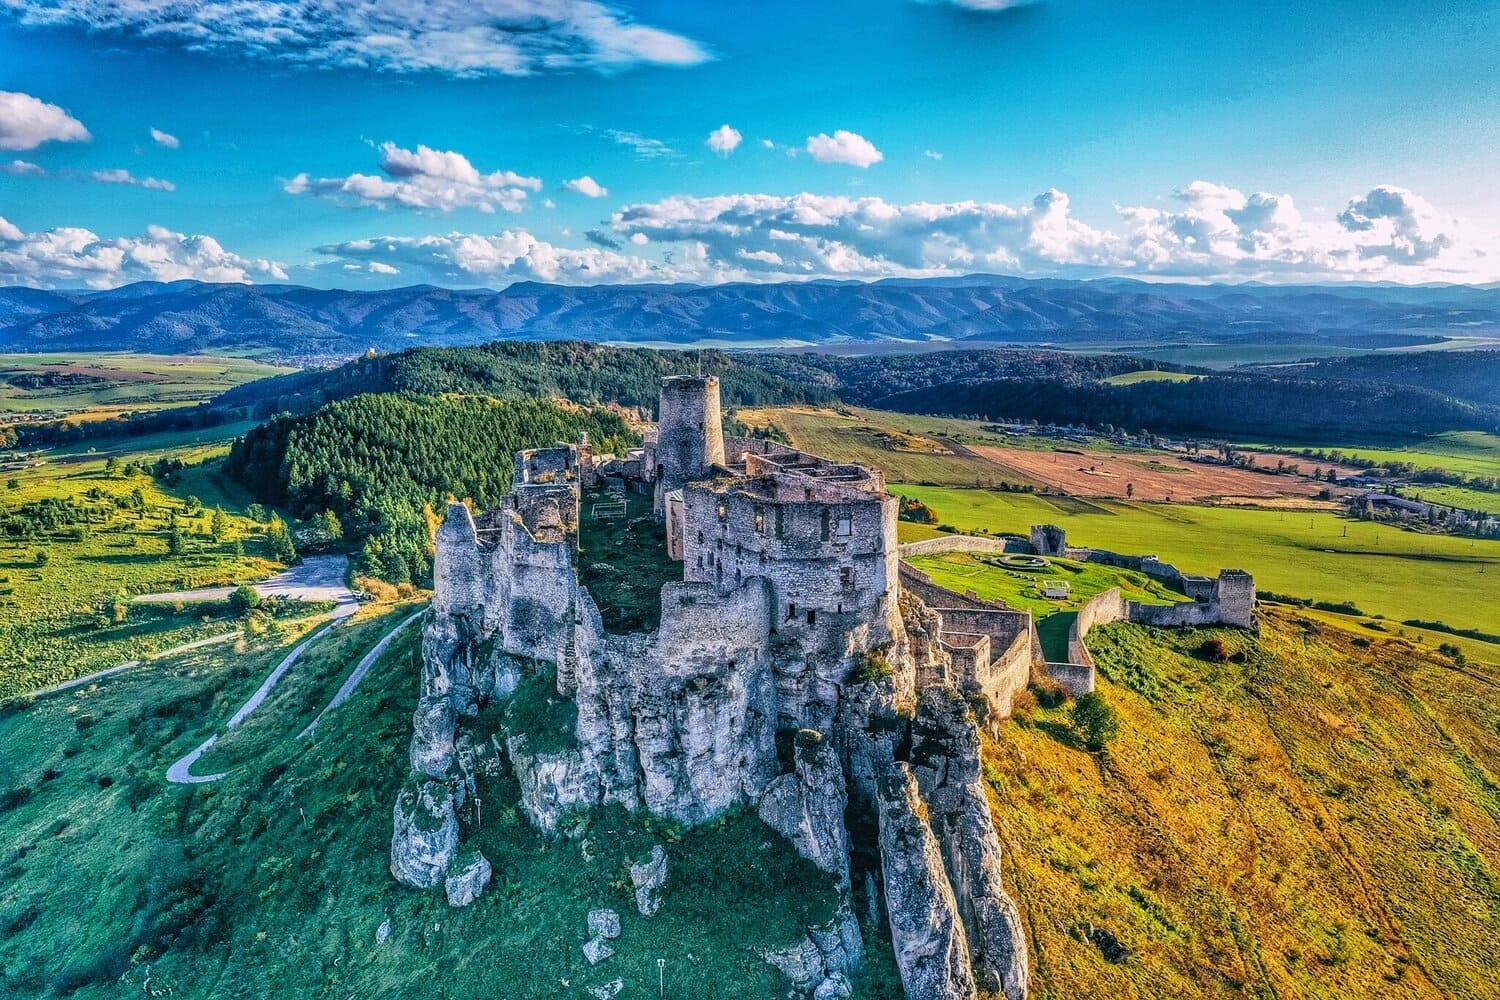 Spišský hrad “Списький град”